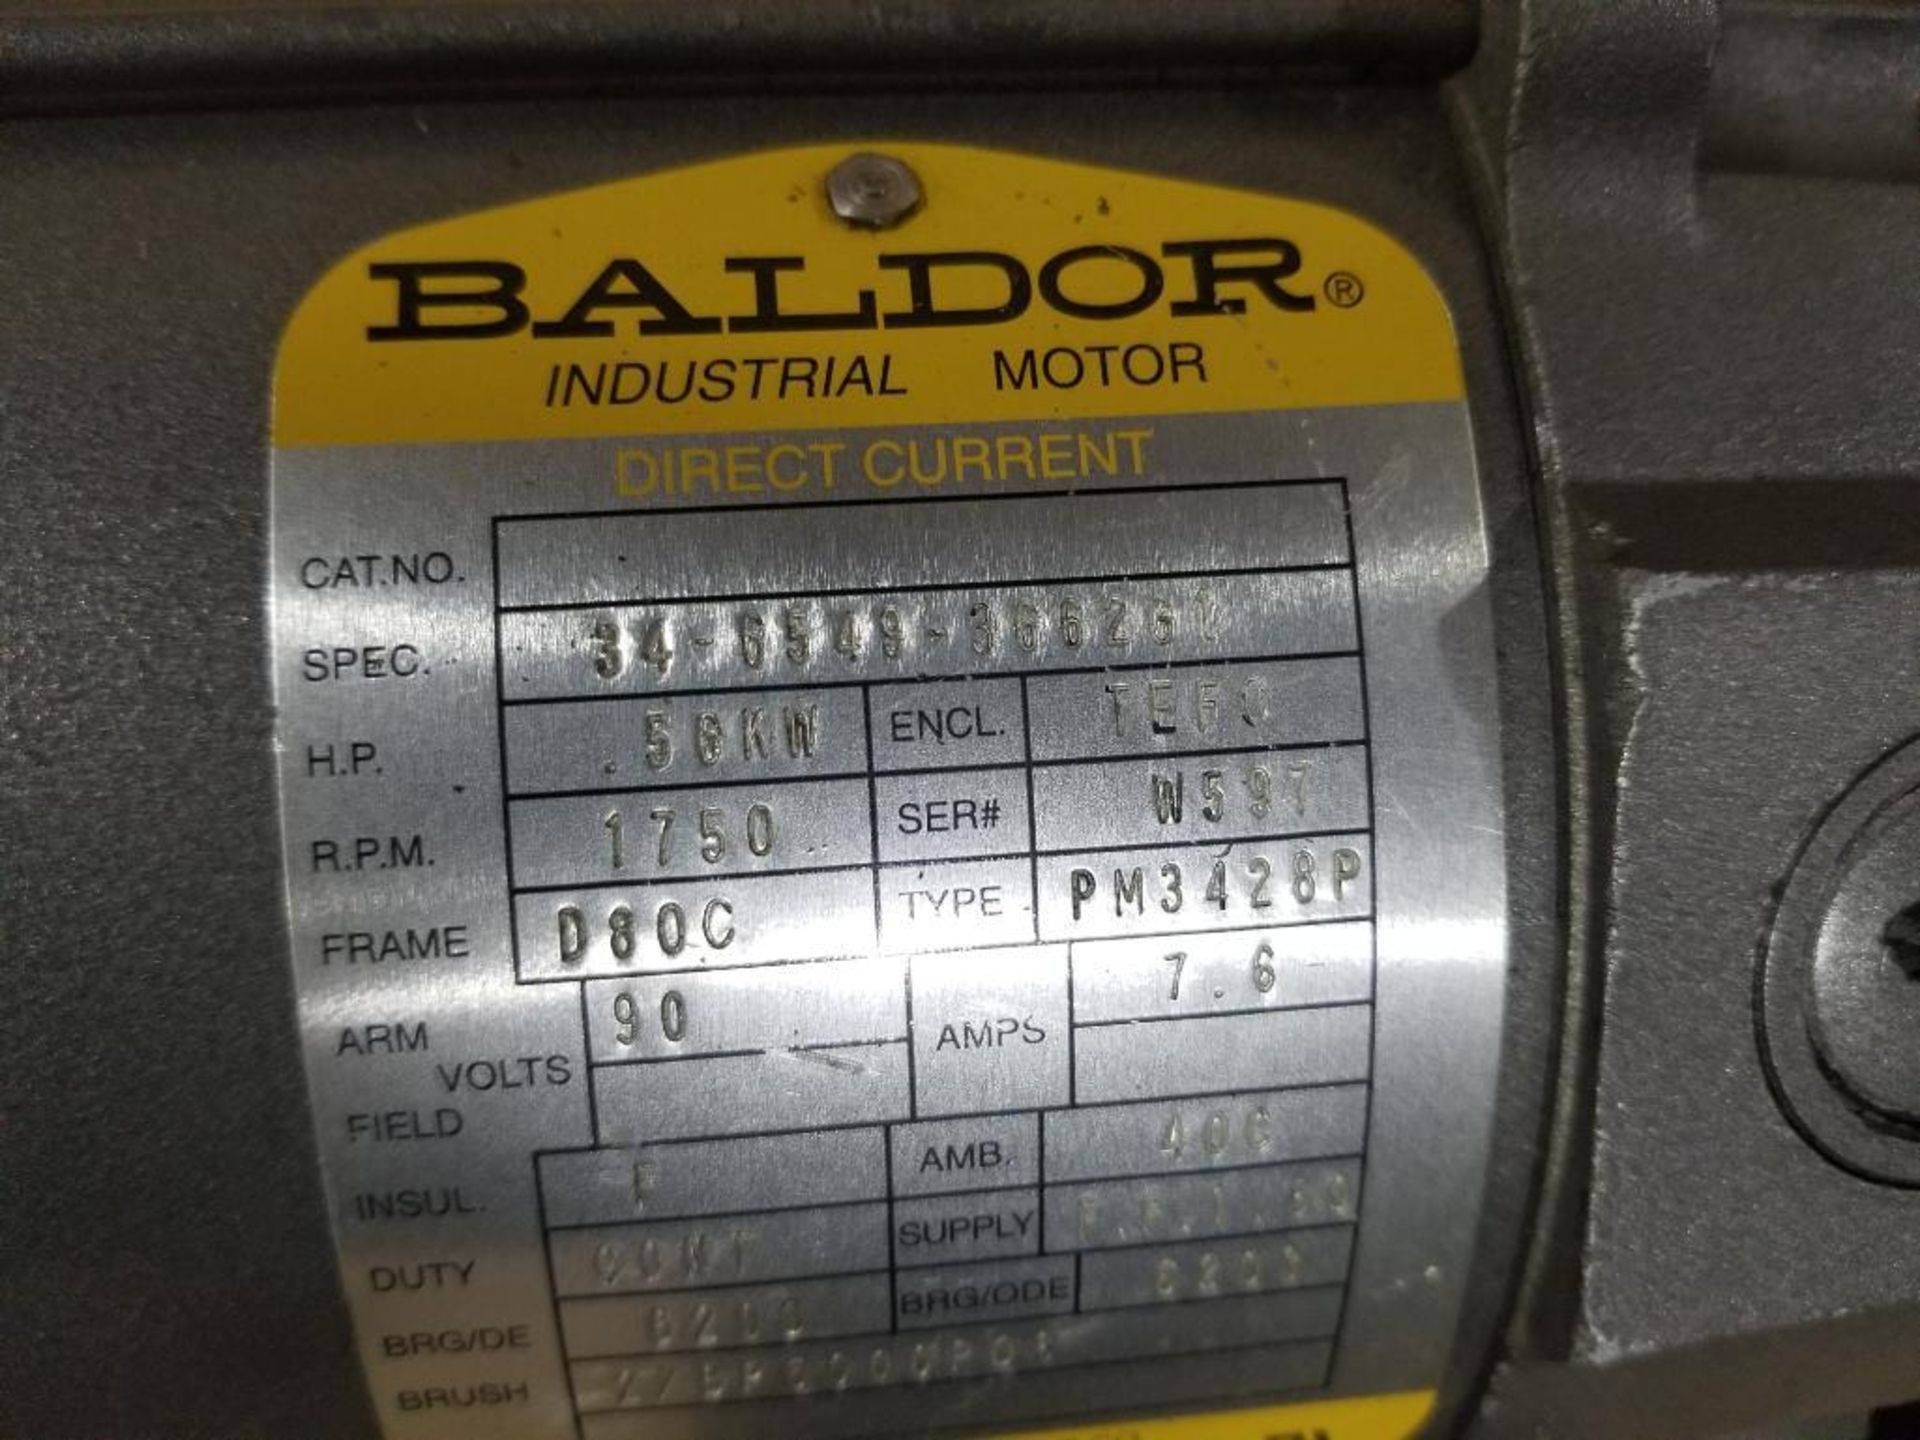 .56kW Baldor motor. 90v. 1750rpm, D80C frame. - Image 3 of 5